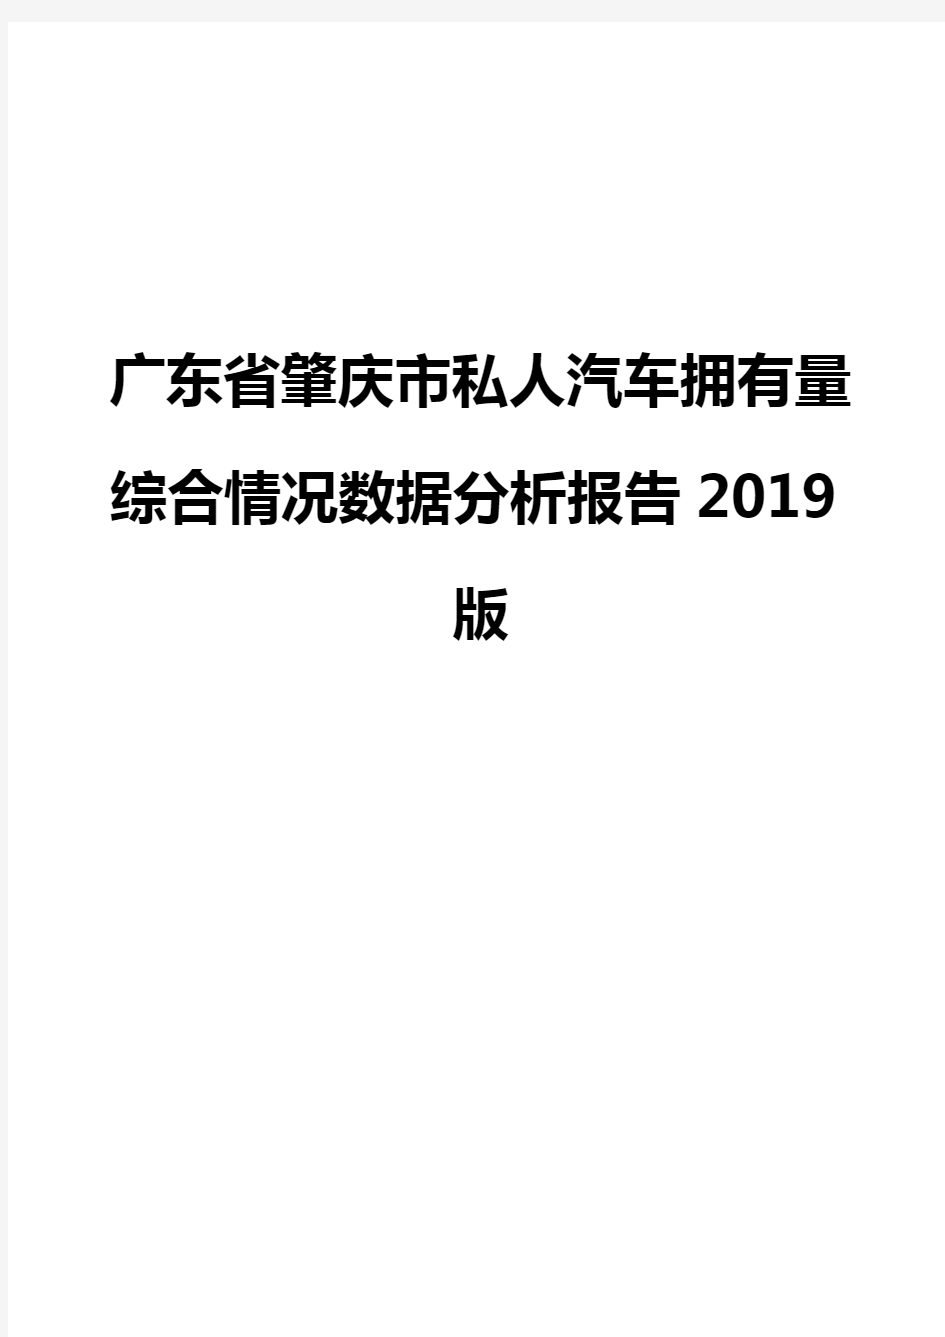 广东省肇庆市私人汽车拥有量综合情况数据分析报告2019版